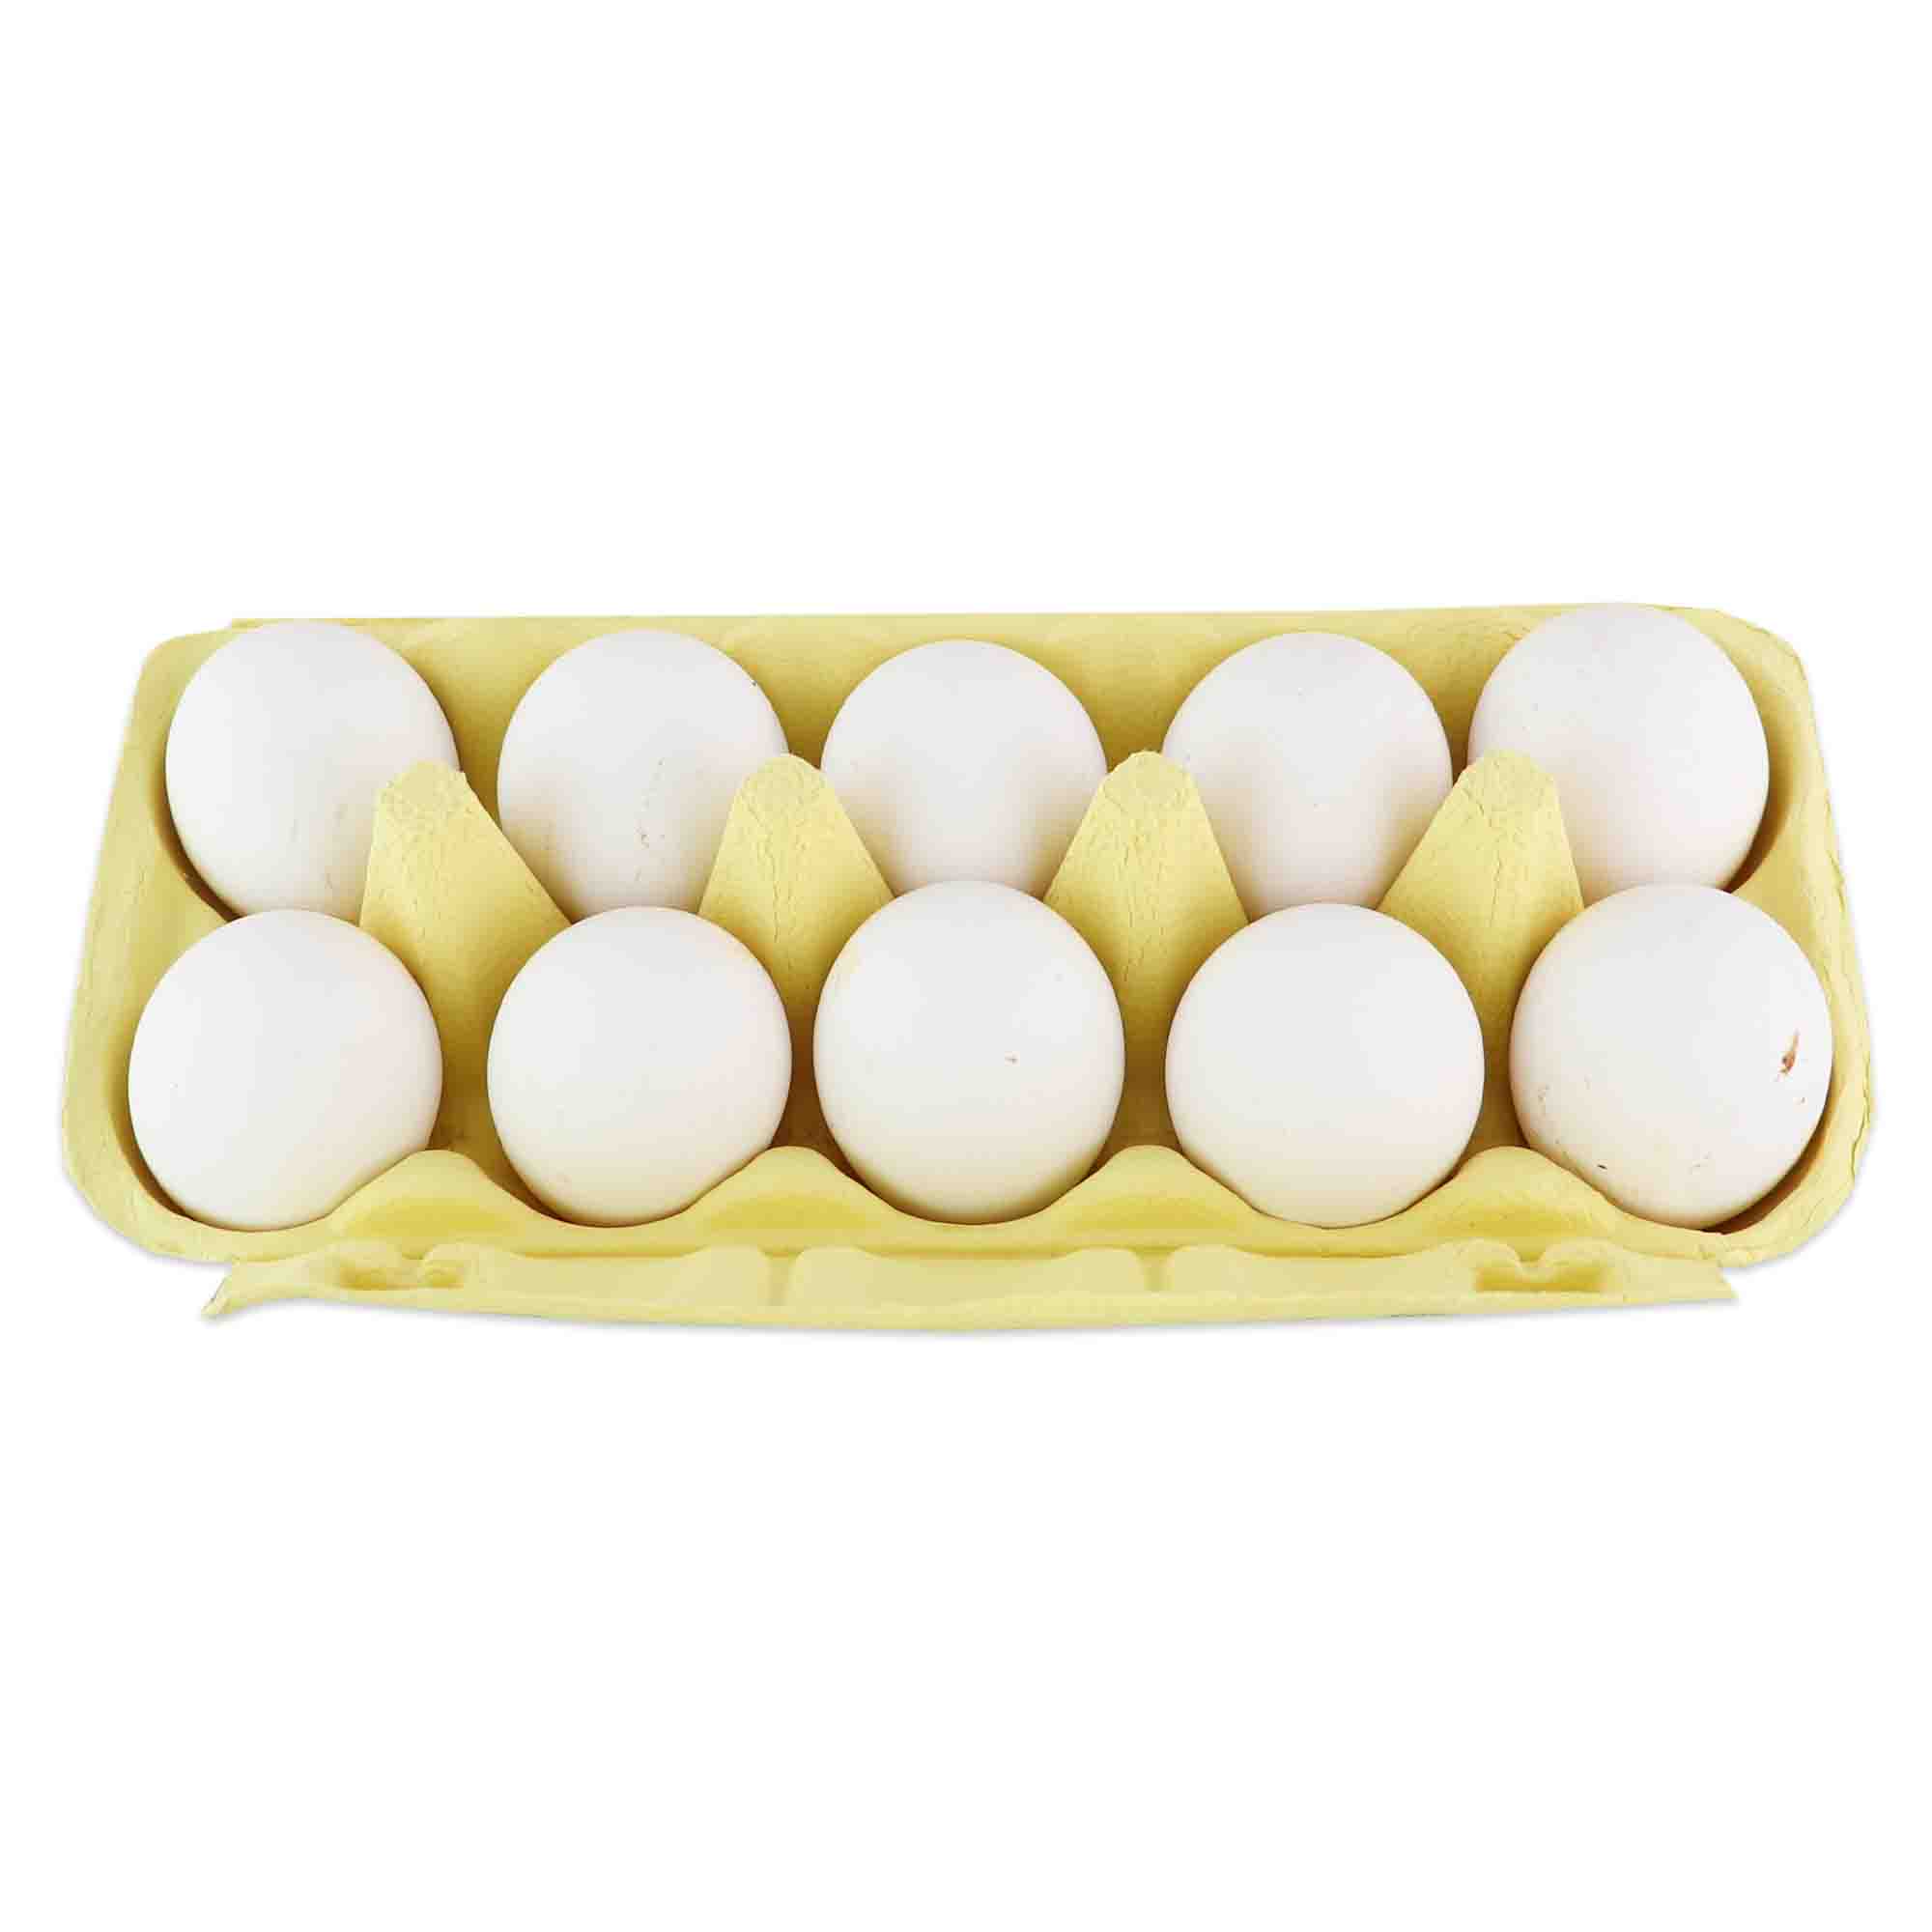 Bounty Vitamin D Eggs 10pcs